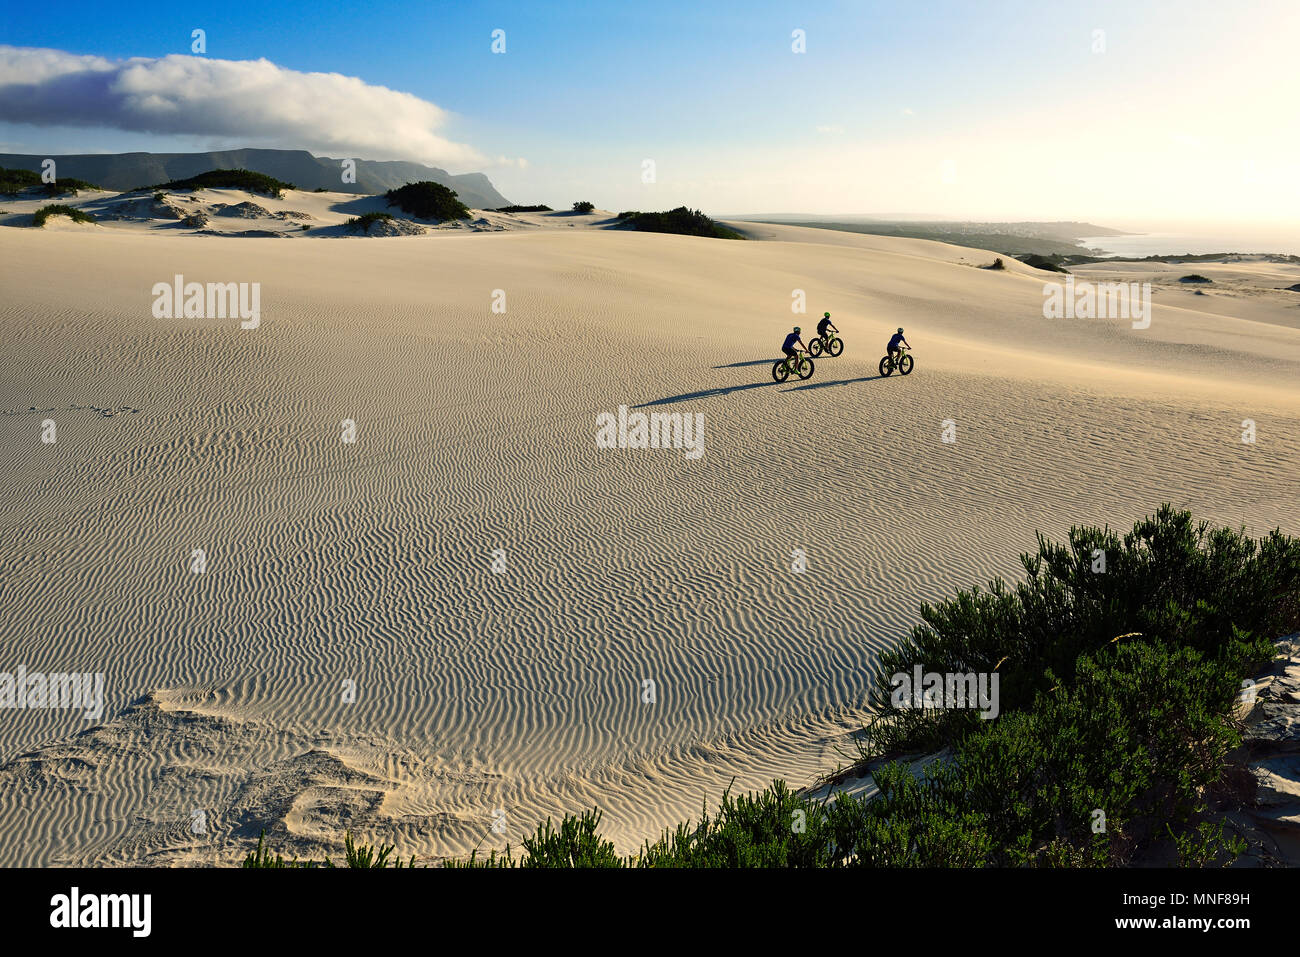 Randonnée cycliste avec de grosses motos sur dunes de sable, randonnée à vélo, réserve naturelle, de Kelders, Italie, Western Cape, Afrique du Sud Banque D'Images